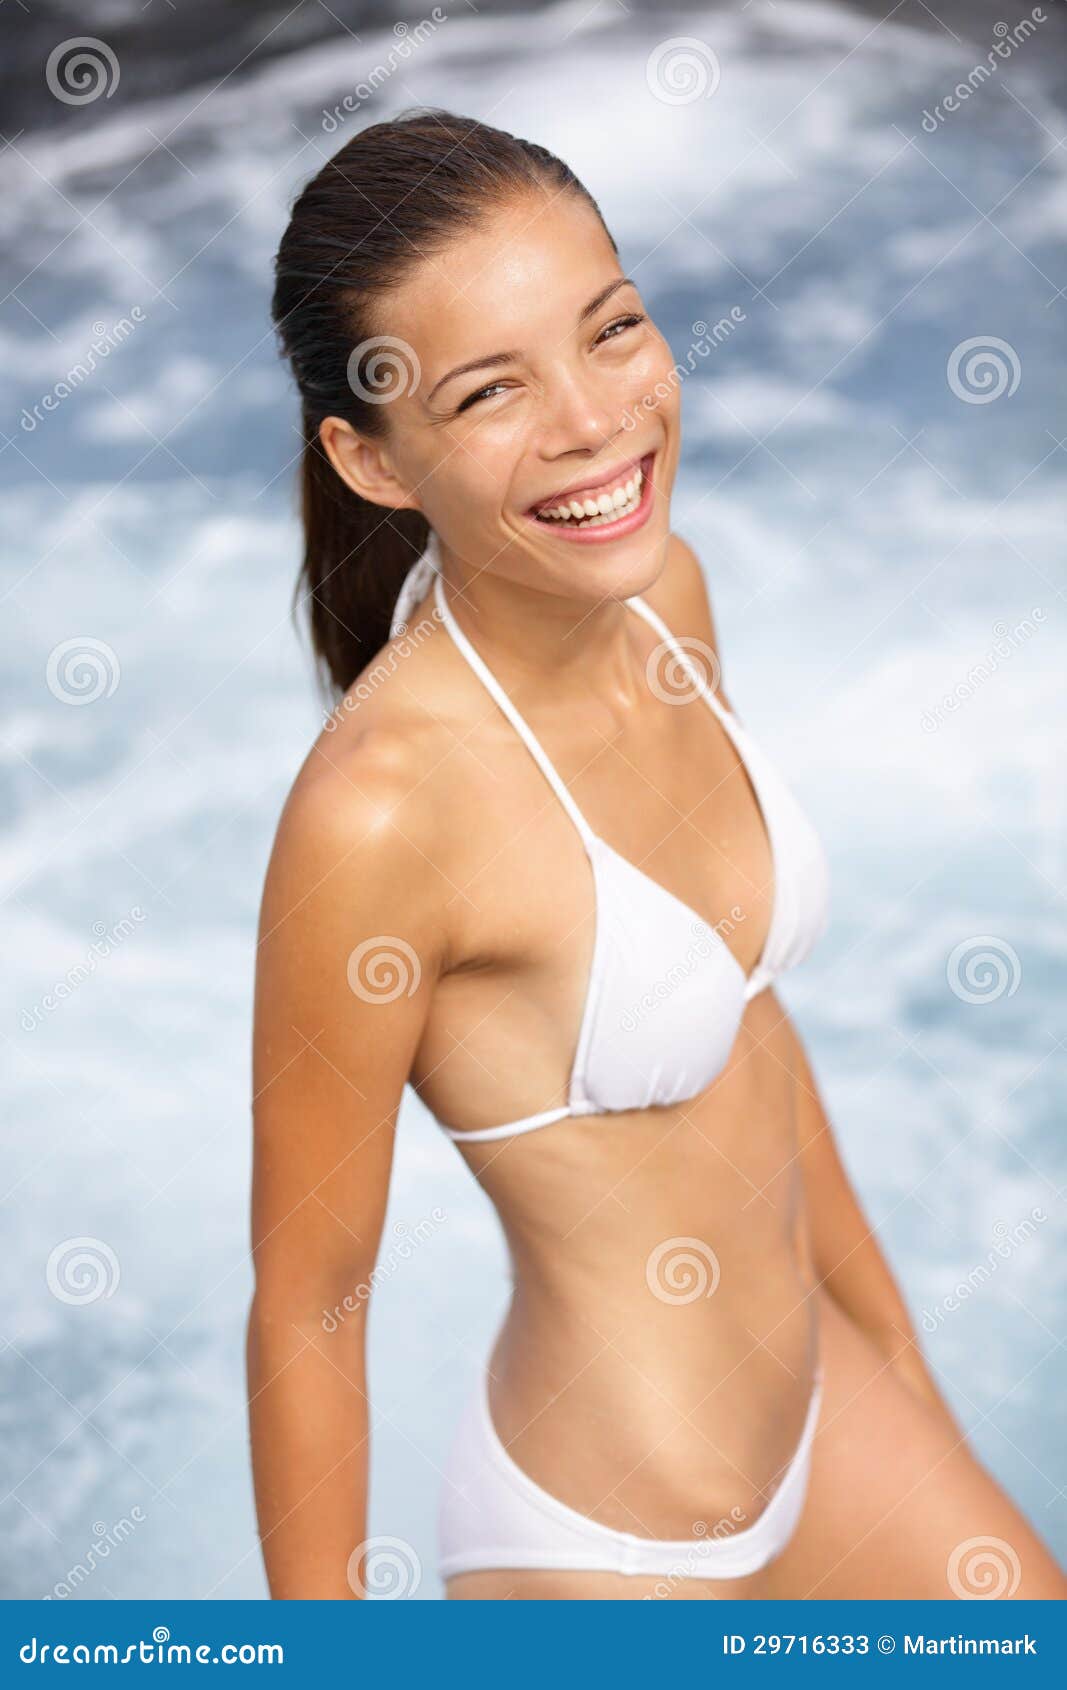 Young Bikini Candid